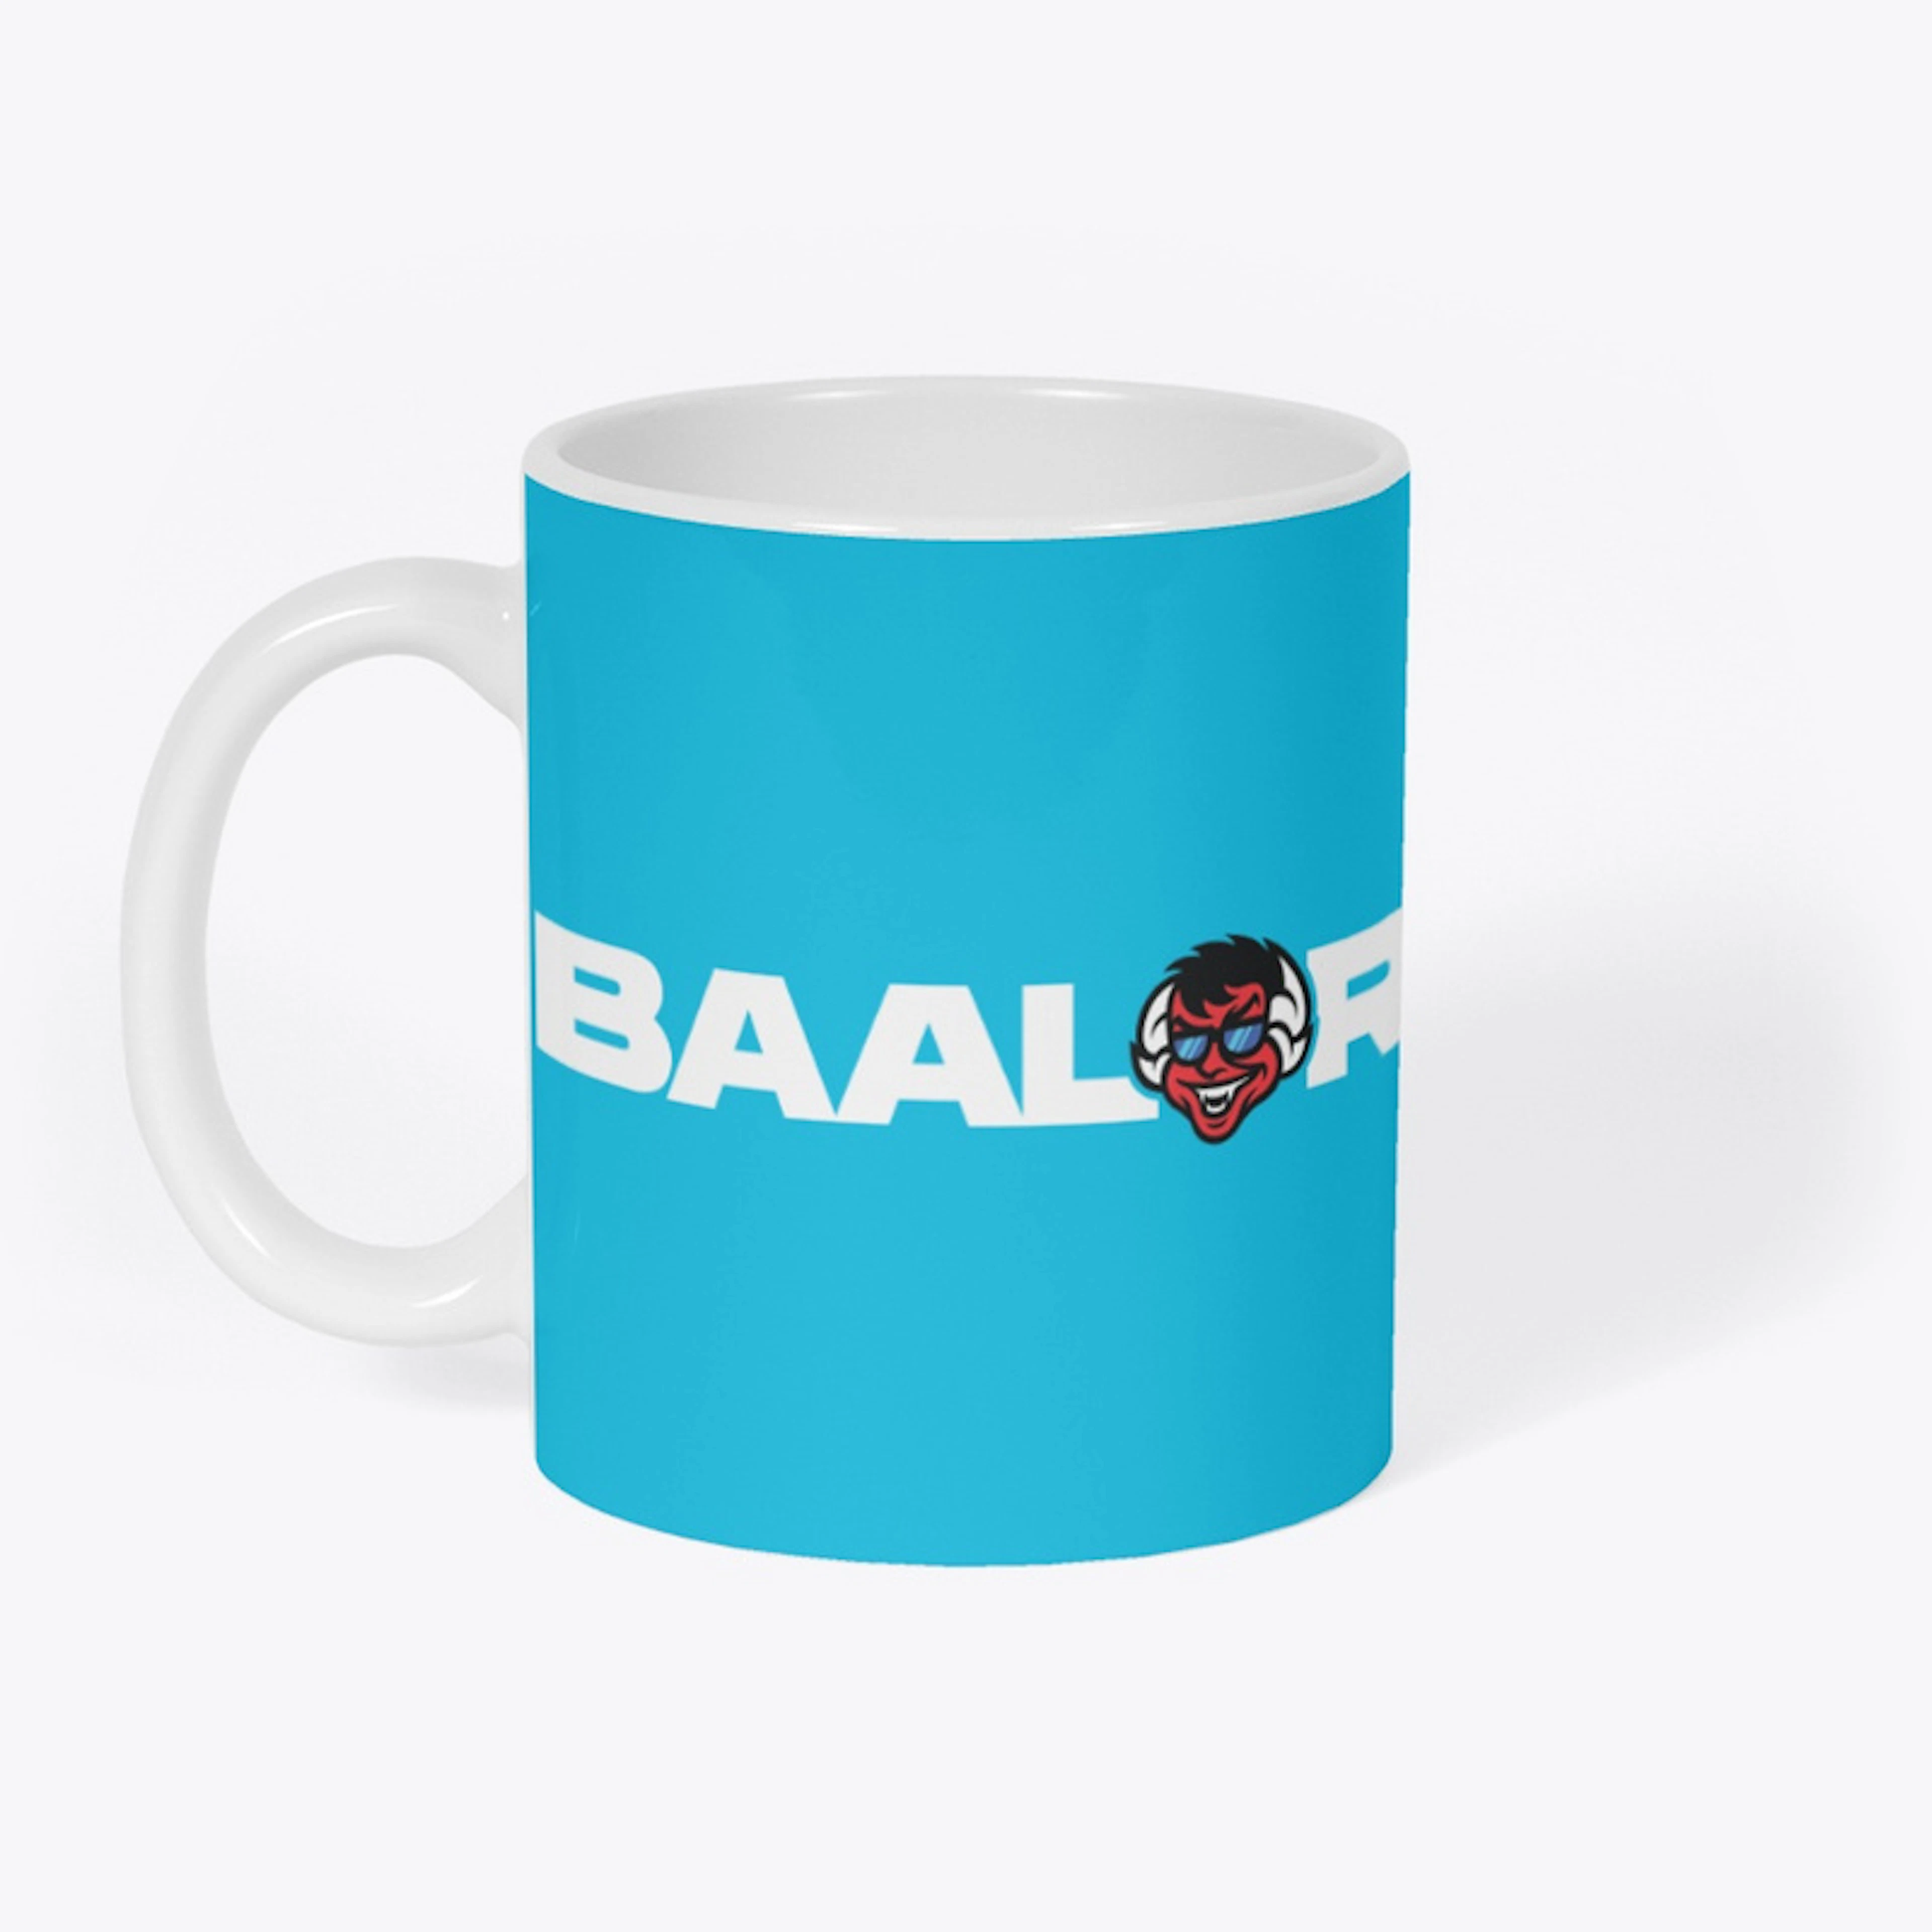 Baalor Face Mug